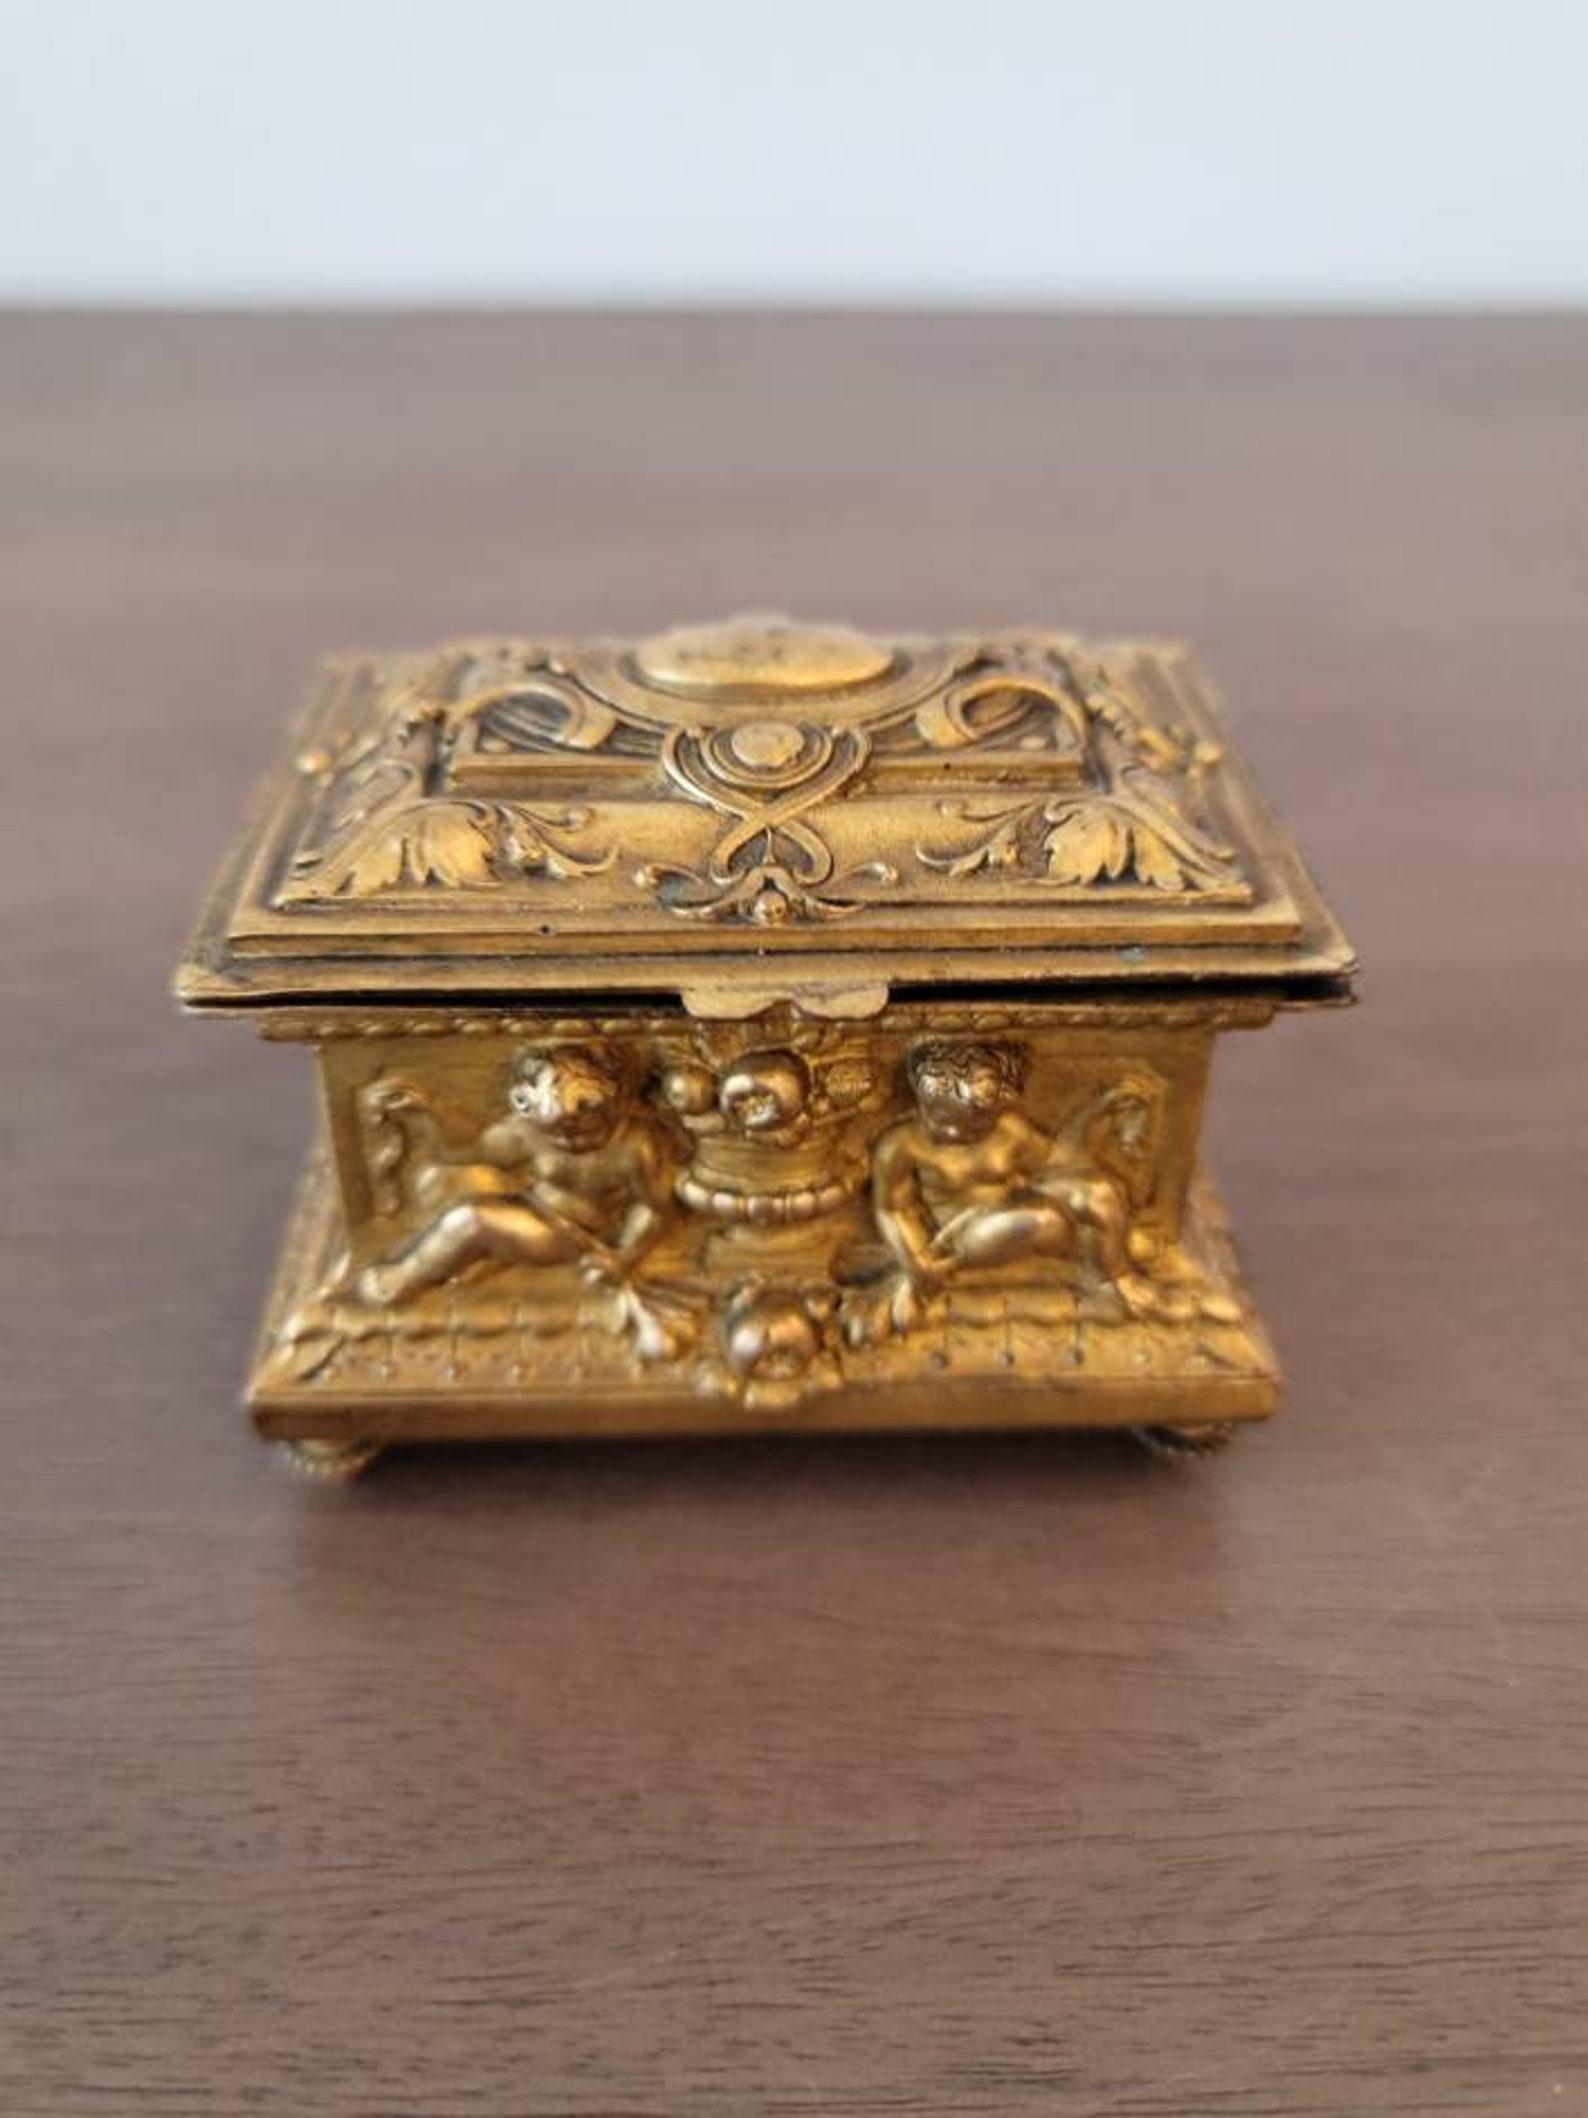 Coffret à bijoux en métal doré de style néoclassique français. 

Né au tournant des XVIIIe et XIXe siècles, ce petit chef-d'œuvre exceptionnellement exécuté présente une forme de coffre rectangulaire avec un couvercle à dôme articulé, qui s'ouvre